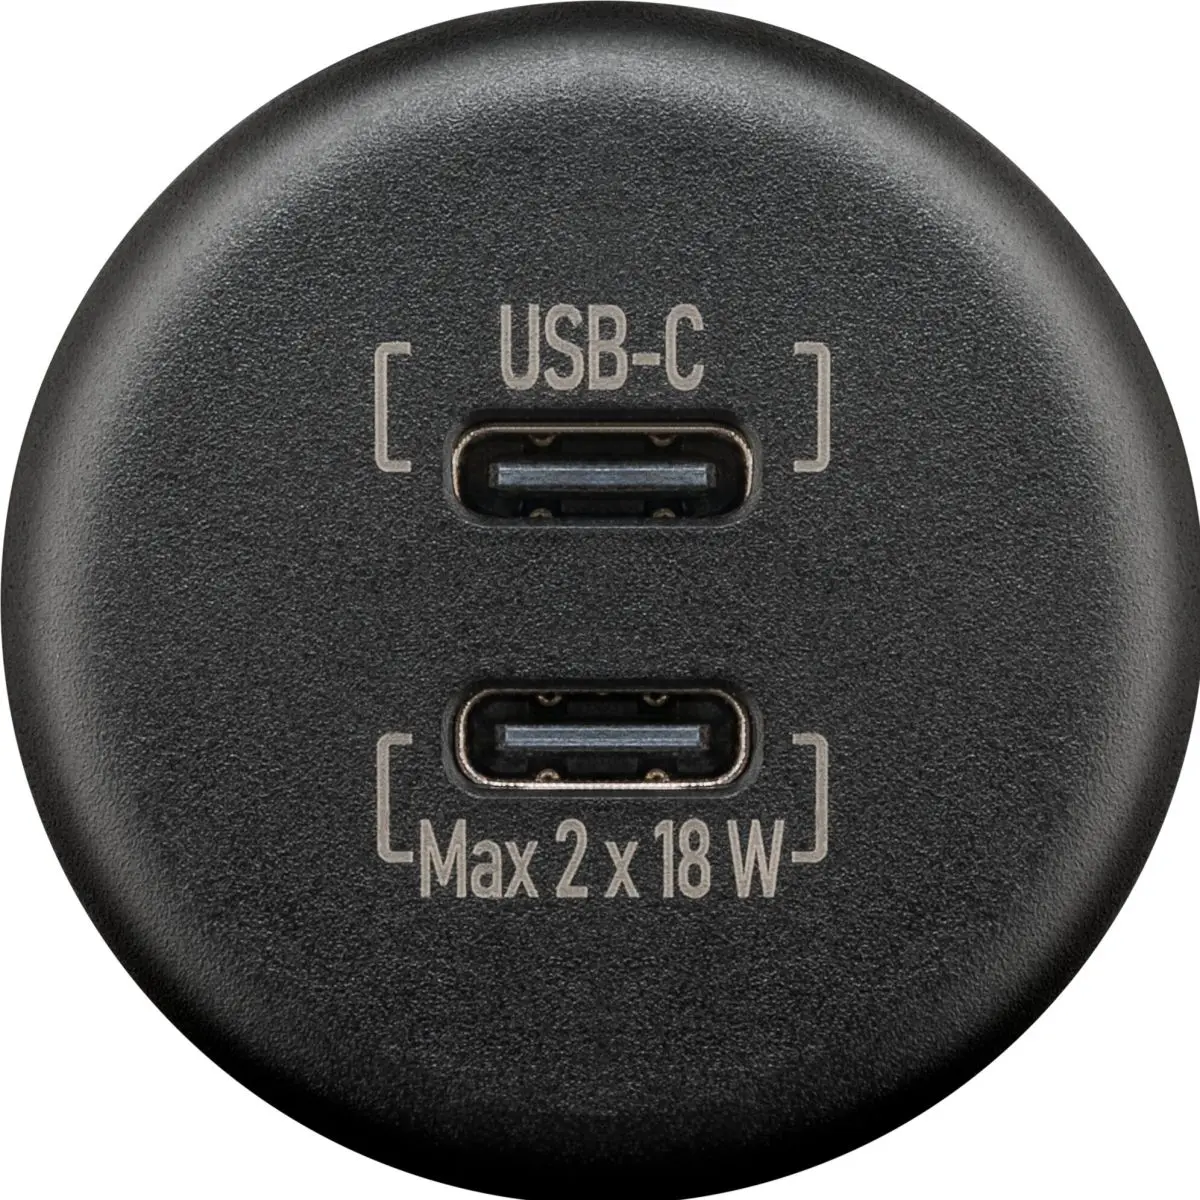 Power USB Steckdose - Dualer  Einbaucharcher 2x USB-C, 2x 18 W